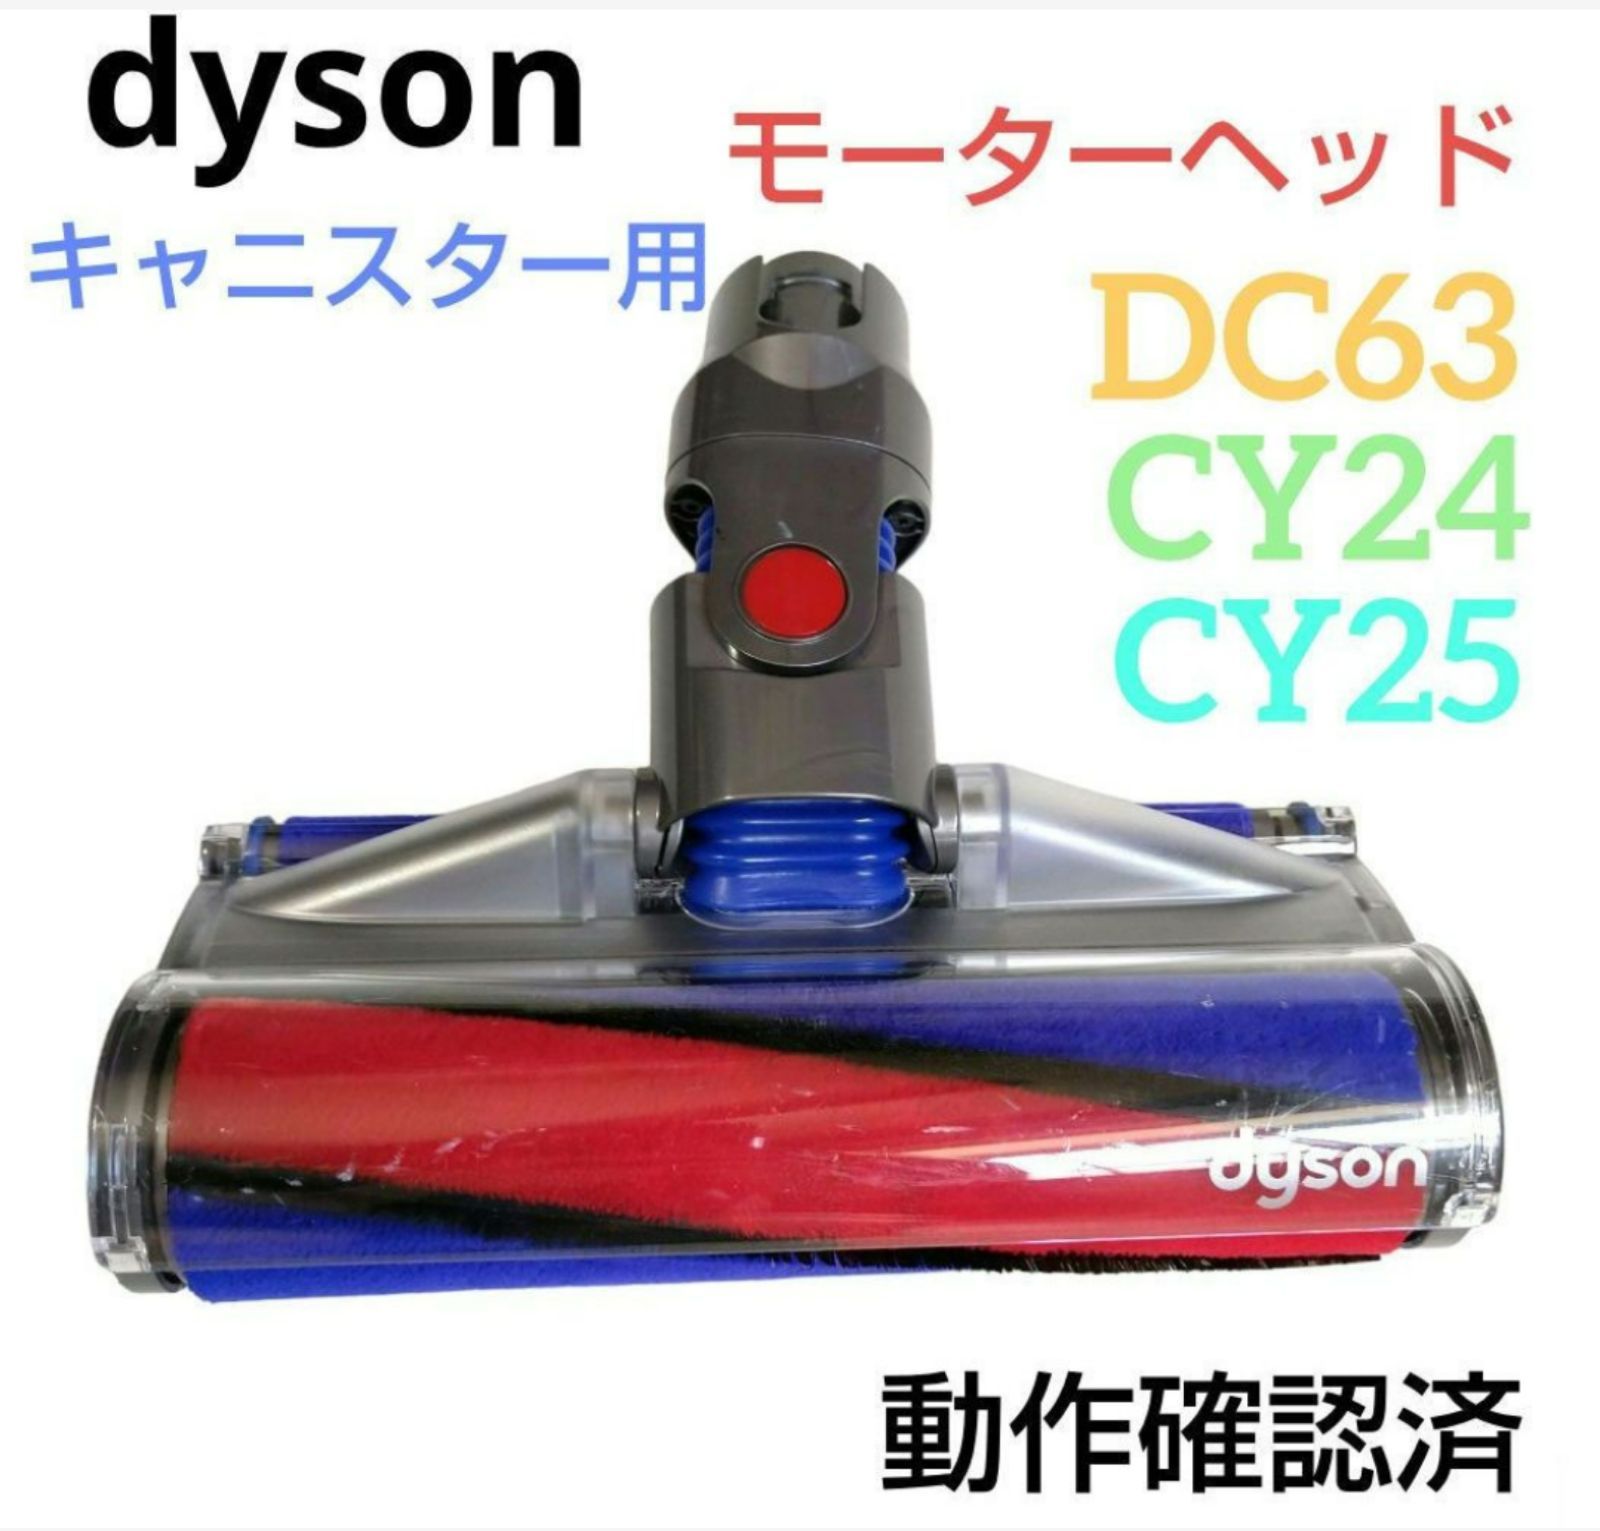 DYSON DC63 サイクロン式 キャニスター型掃除機 - 掃除機・クリーナー